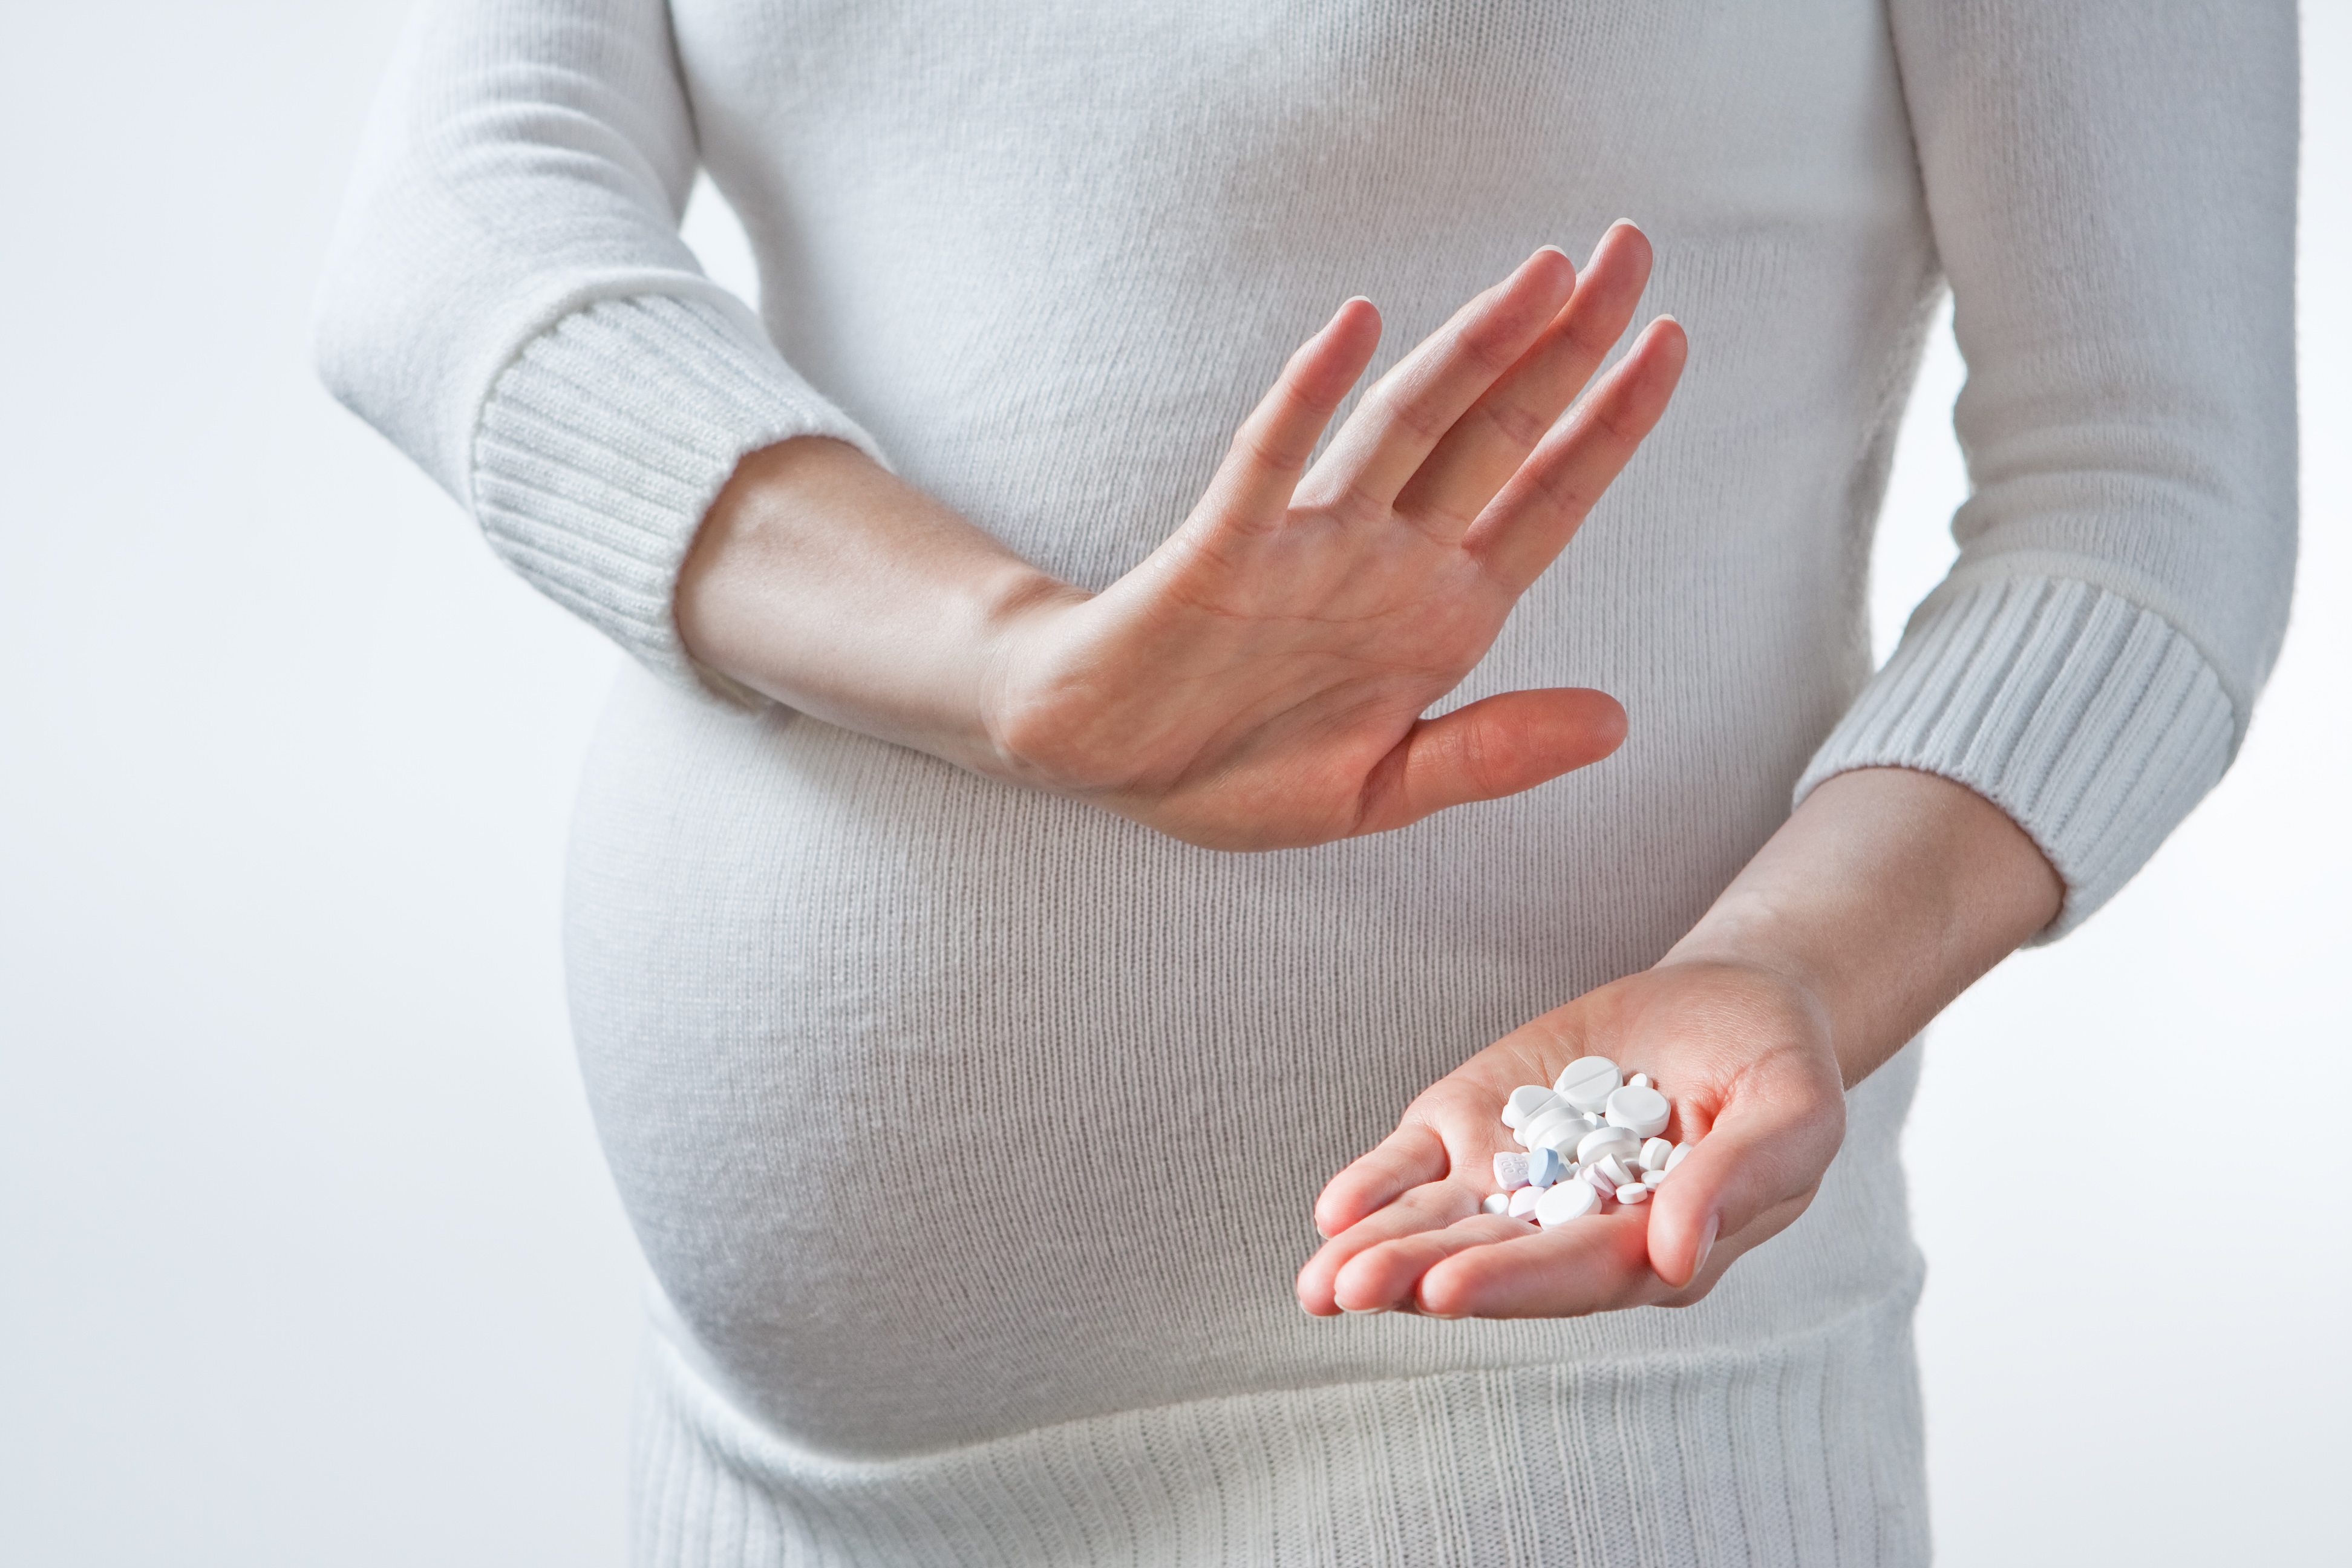 Вживання парацетамолу при вагітності може знижувати IQ дитини, дослідження  